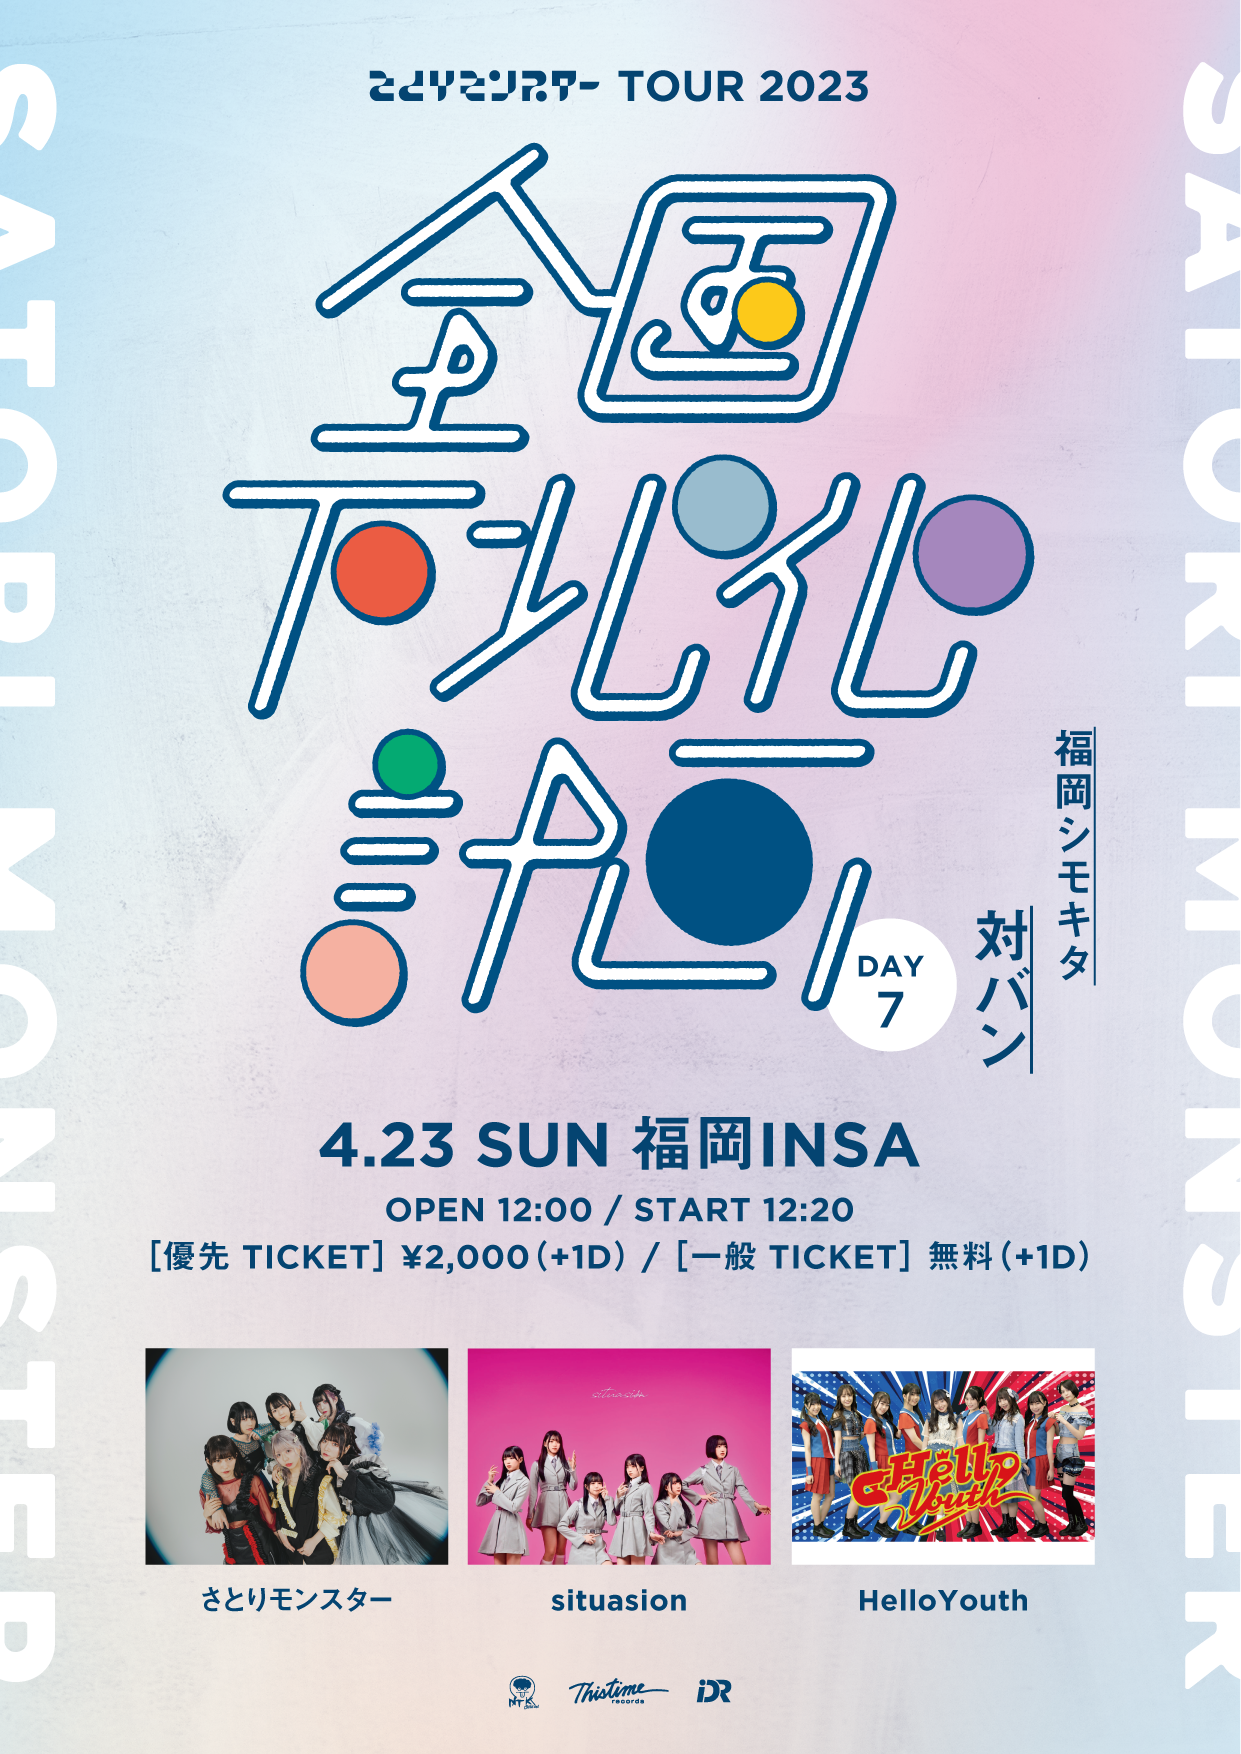 さとりモンスター TOUR2023   『全国下北化計画』DAY7  〜福岡 シモキタ 対バン 〜